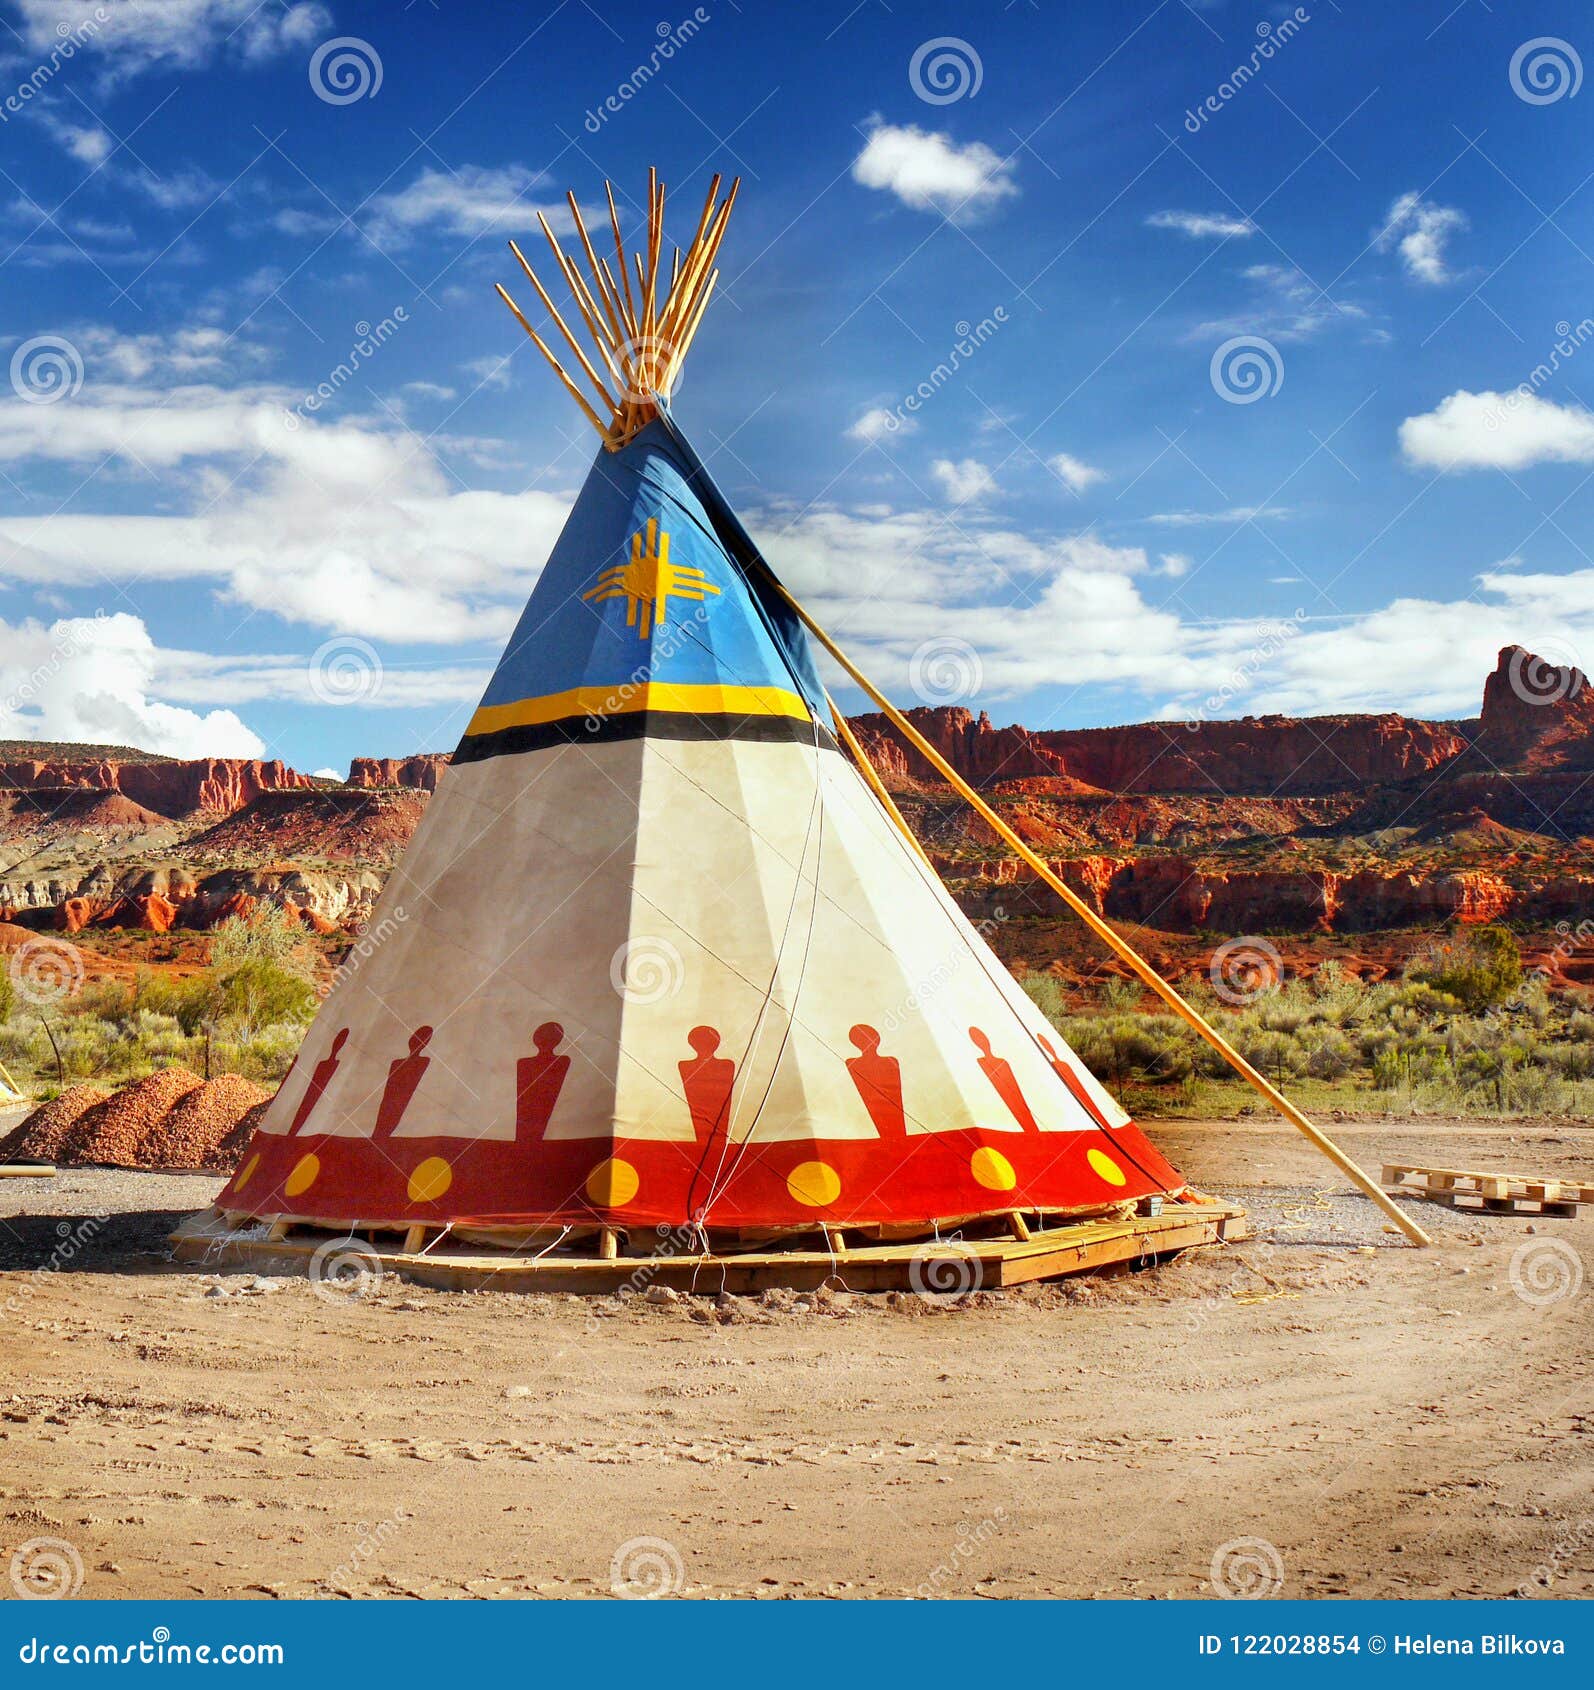 Kinematica Arthur Conan Doyle titel Het Inheemse Tipi Van De Indiaantent Stock Foto - Image of tent,  amerikaans: 122028854